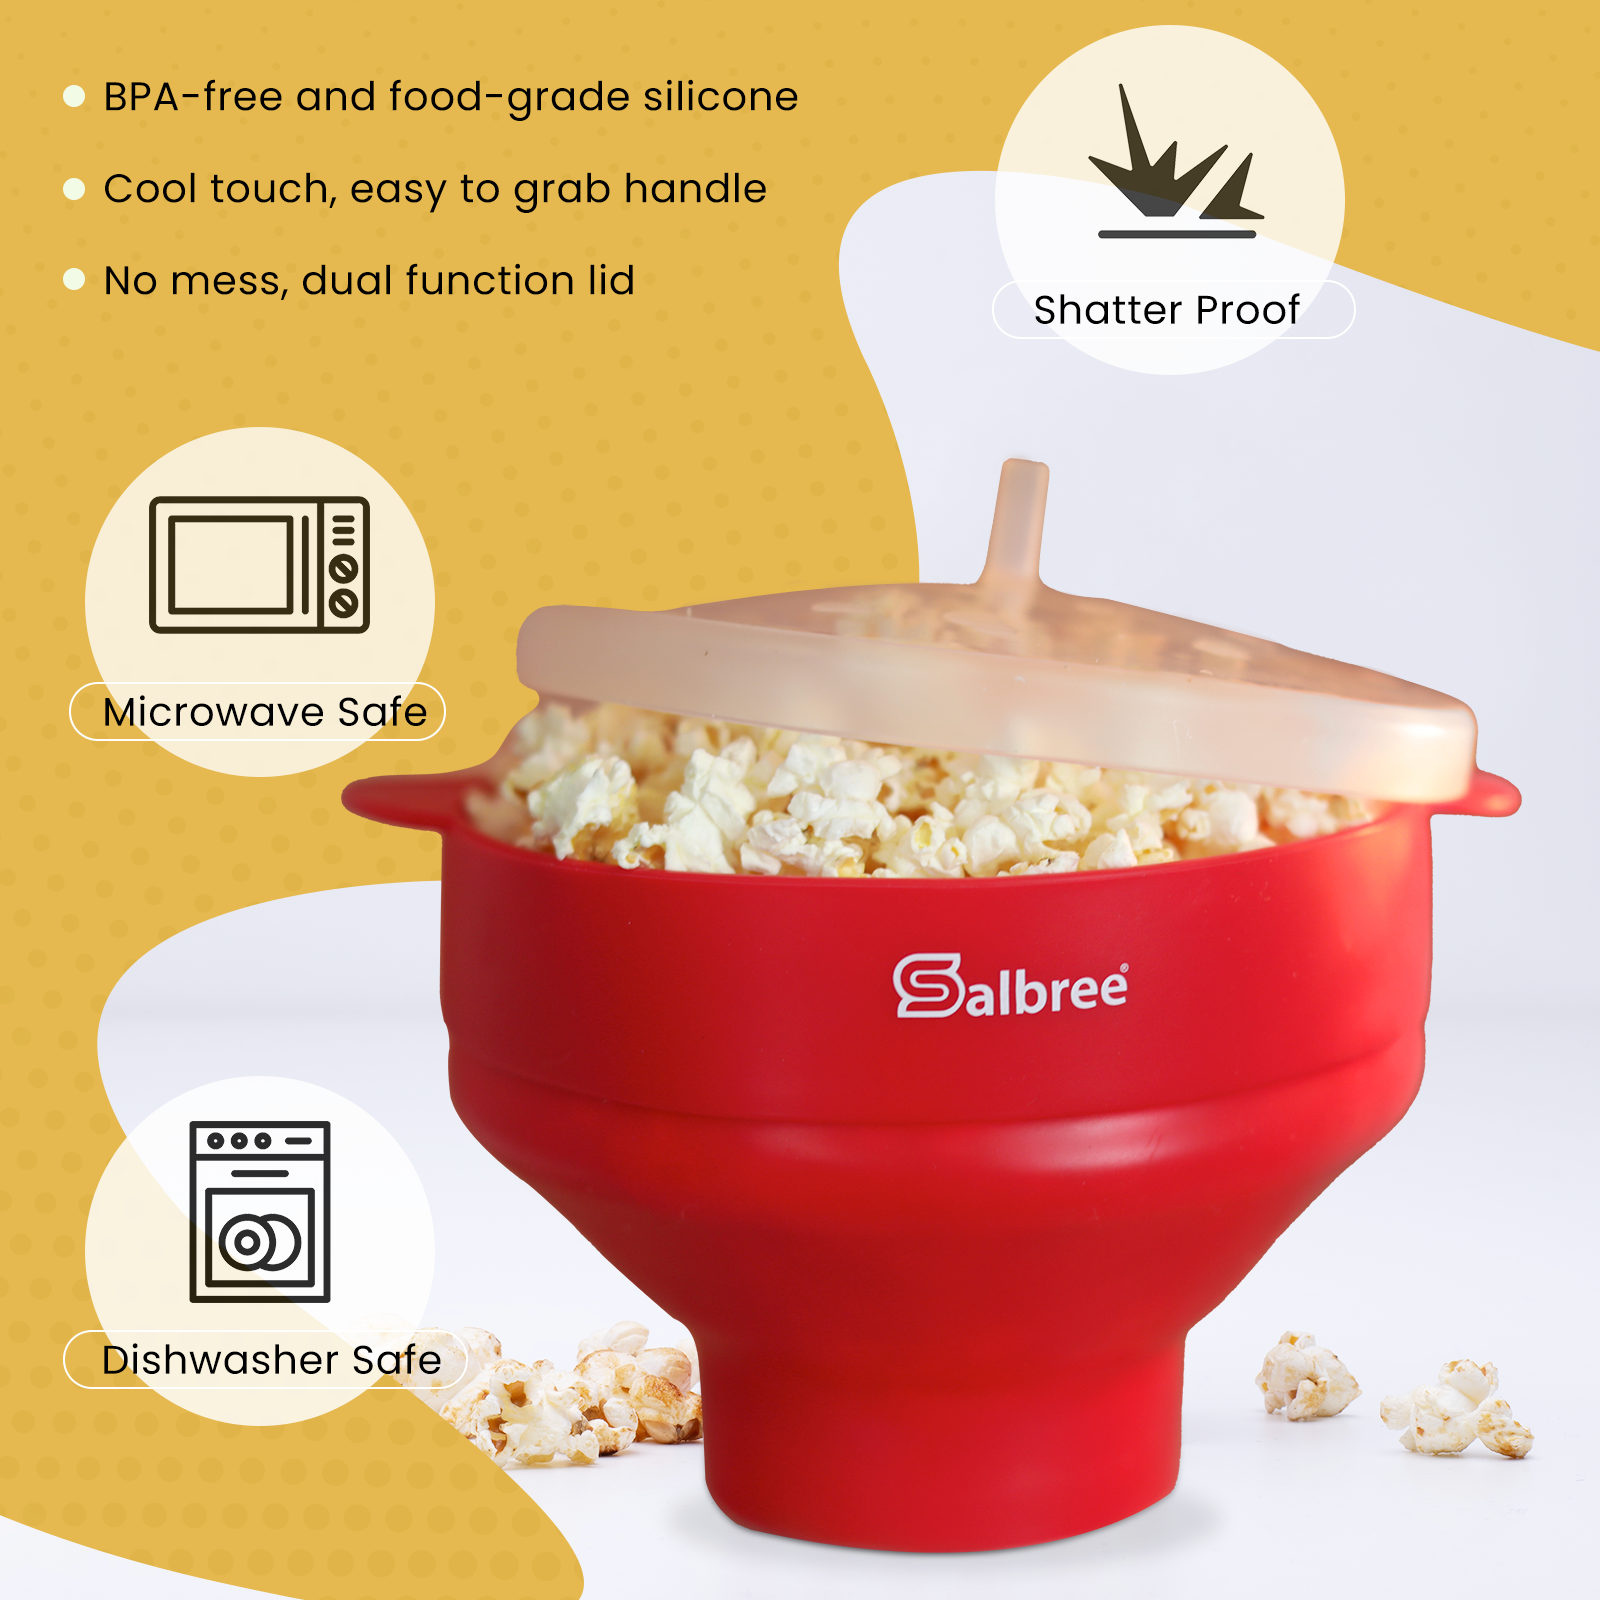 Torden grænseflade forgænger The Original Salbree Microwave Popcorn Popper Machine, Silicone Popcor -  salbree.com